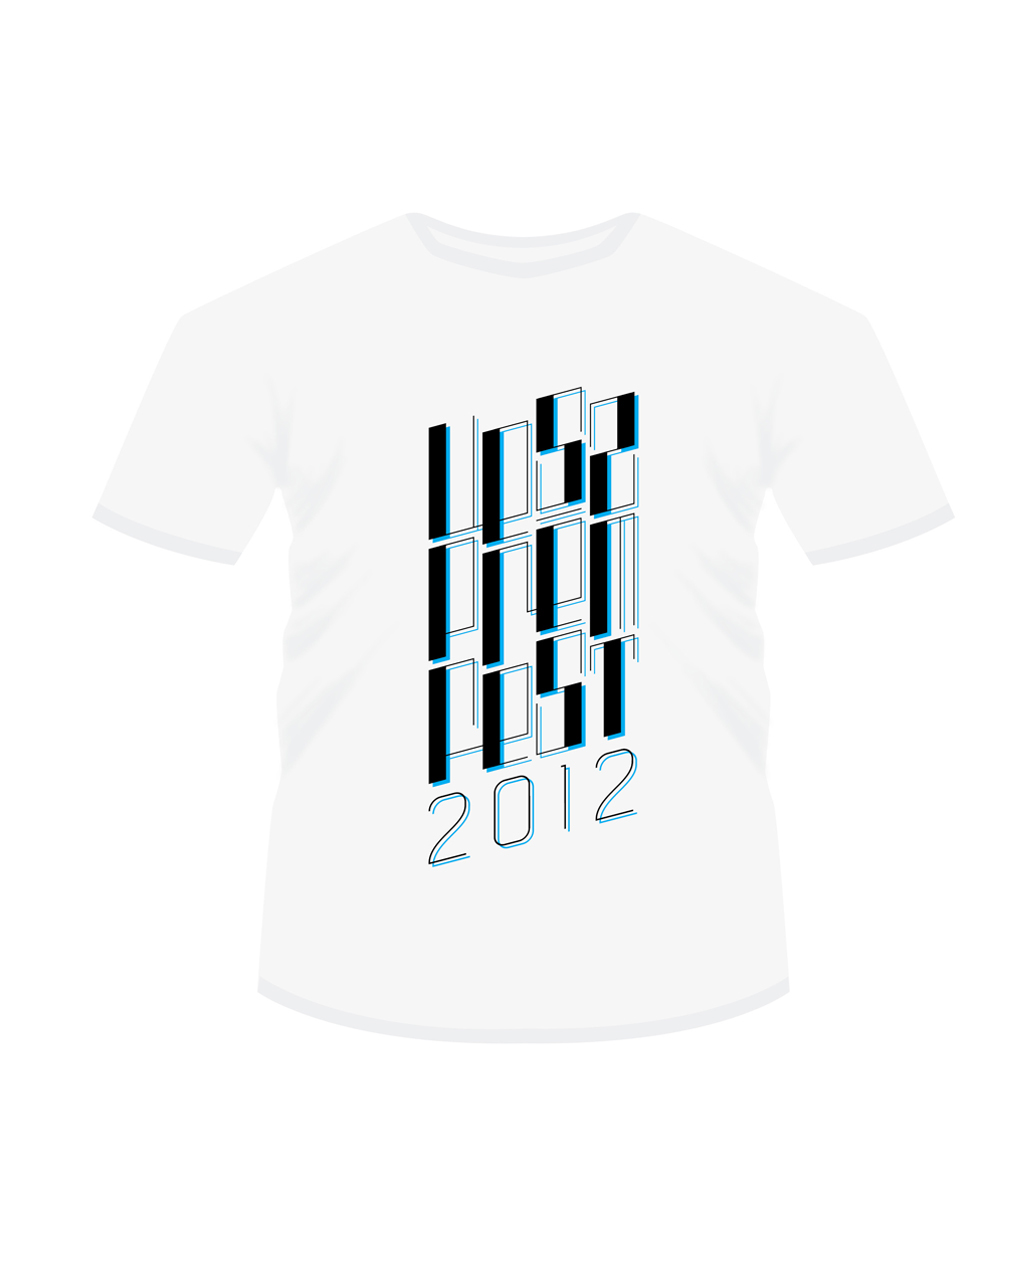 t-shirt design RENATO molnar graphic